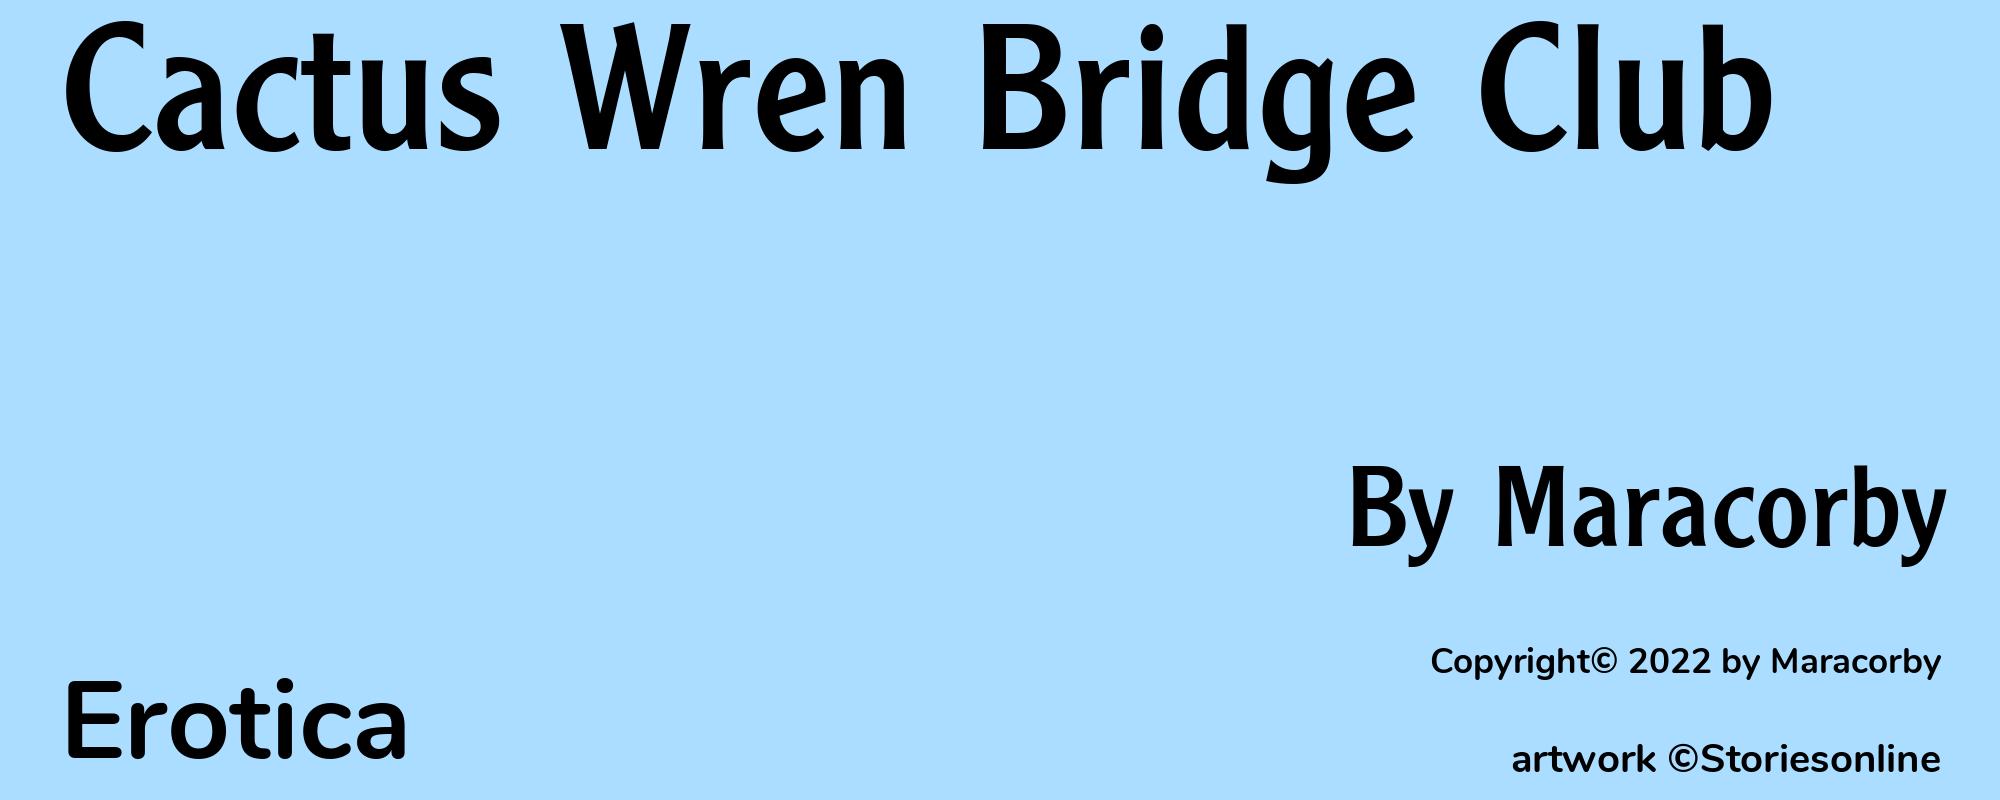 Cactus Wren Bridge Club - Cover